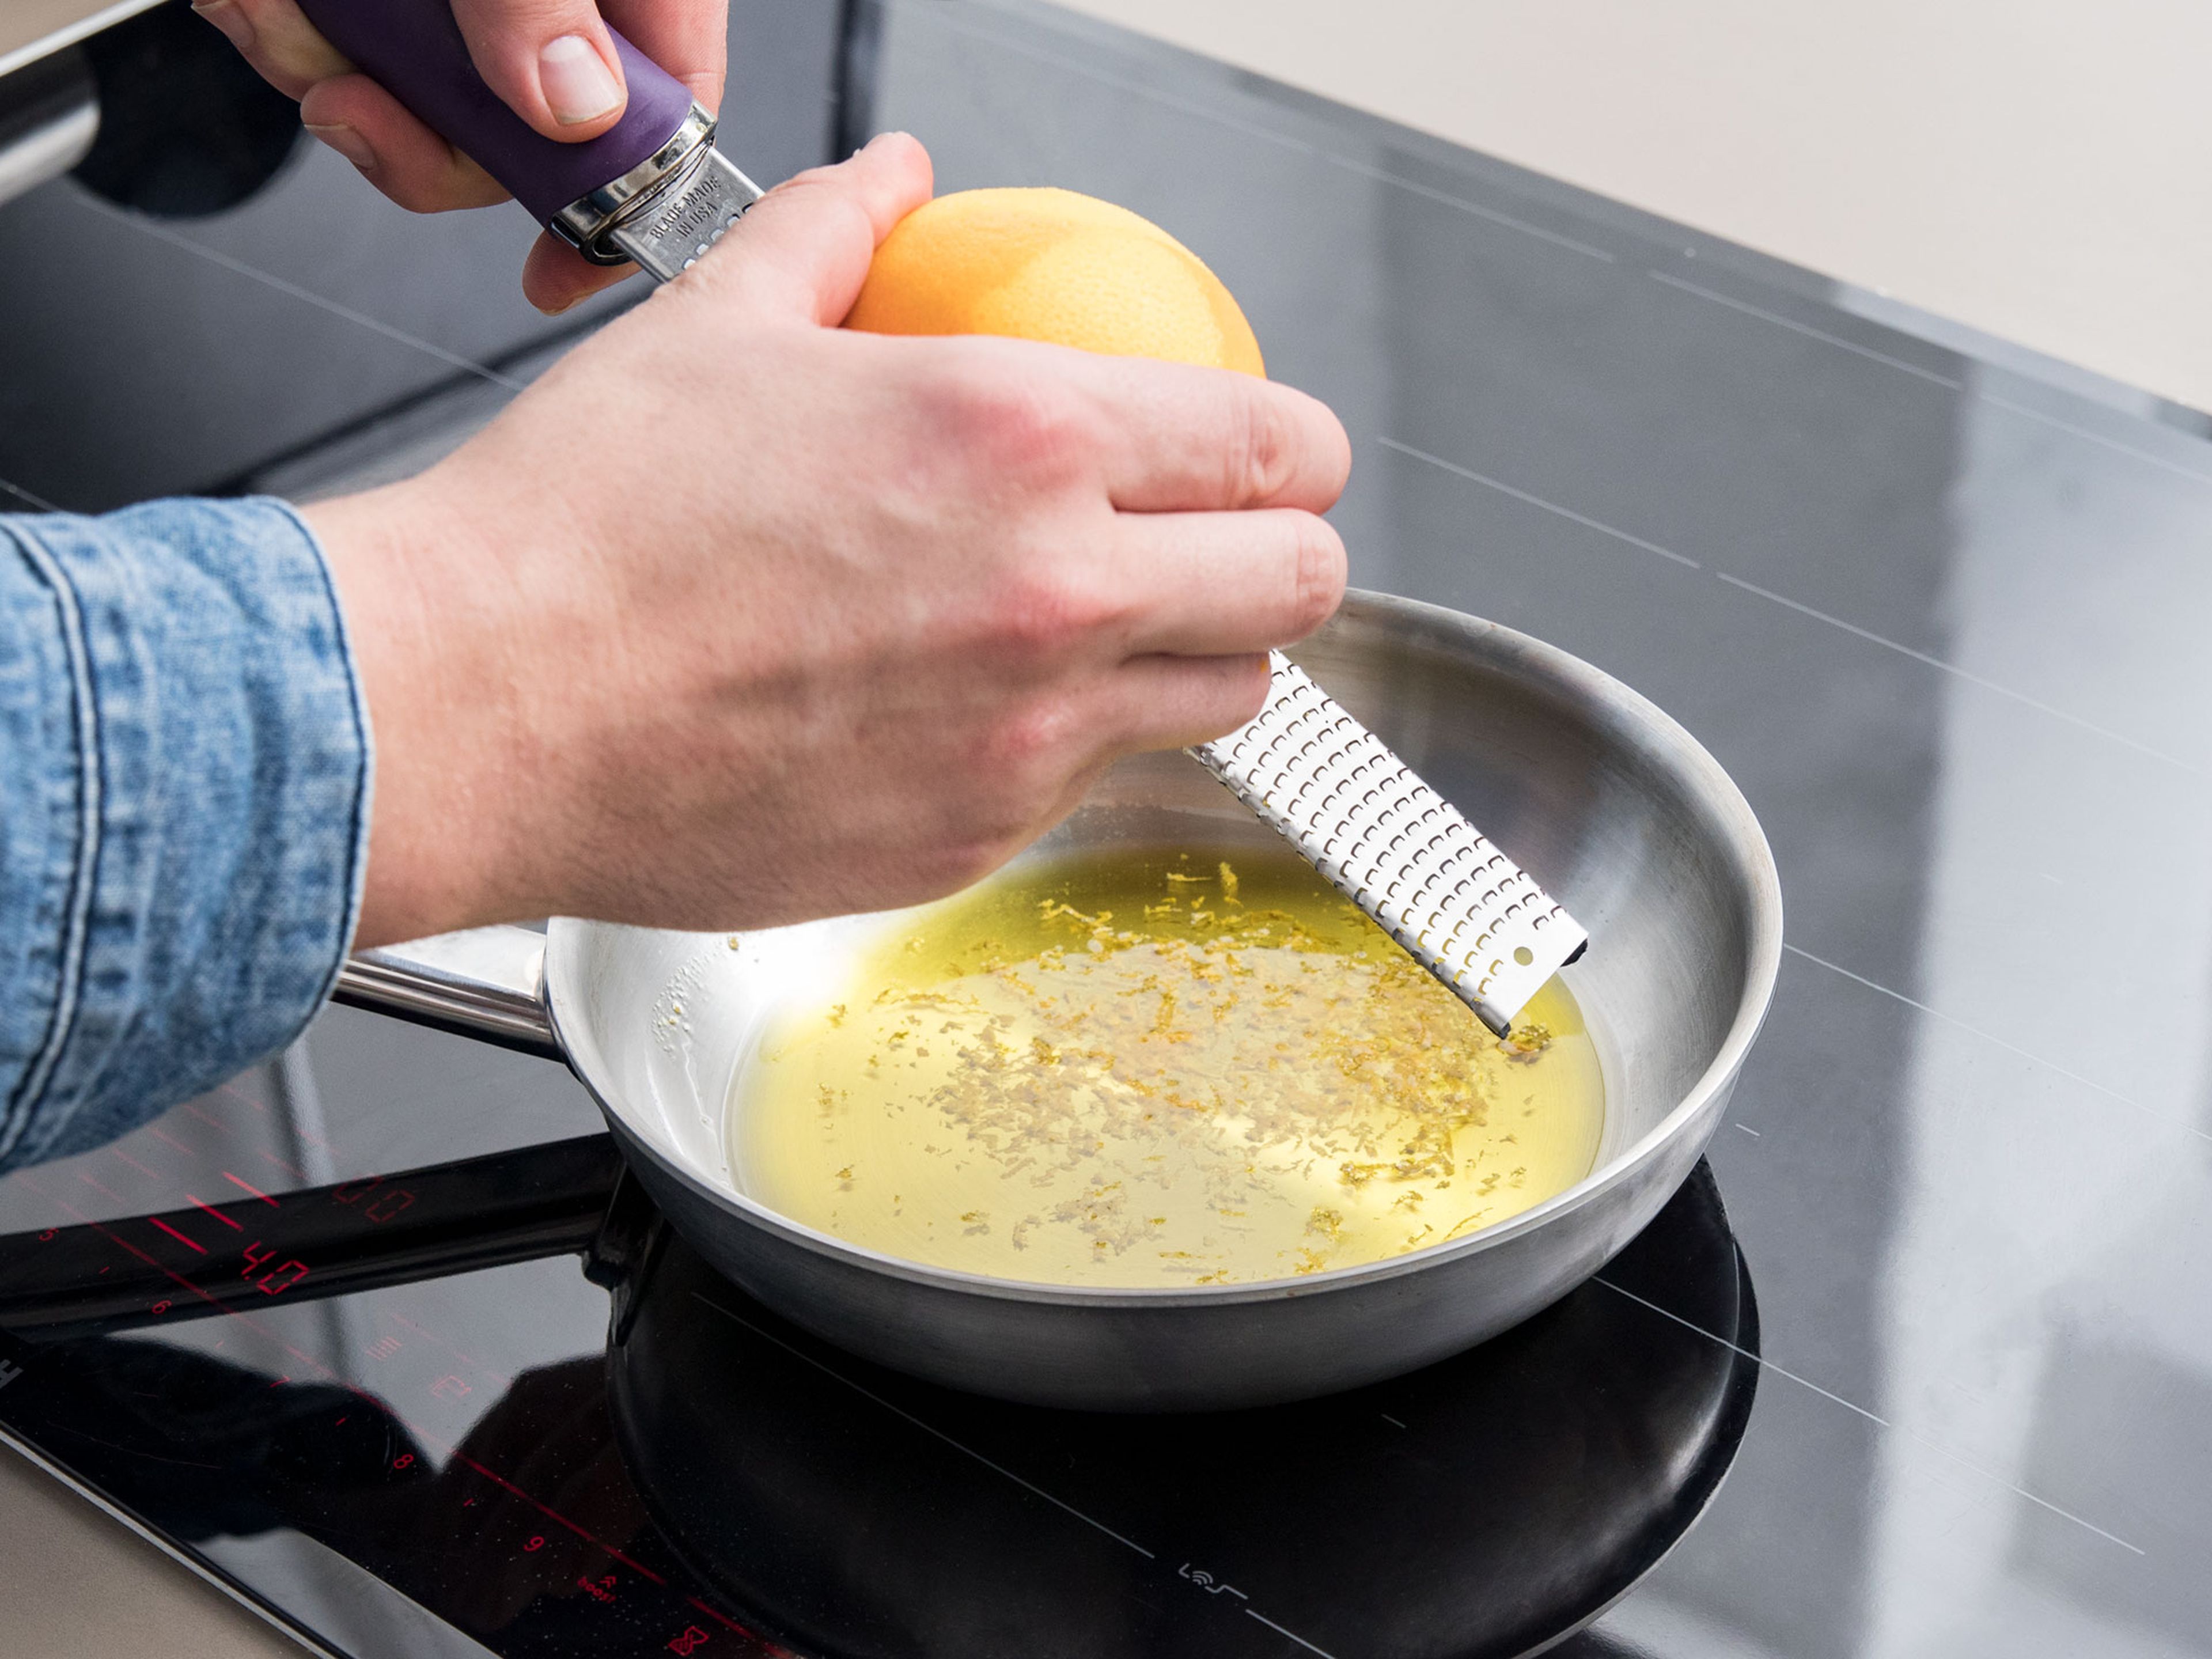 Backofen auf 230°C vorheizen. Olivenöl in einer kleinen Pfanne erhitzen und Orangenschale hinein reiben. Etwas köcheln lassen, damit die Orangenschale ihr Aroma an das Olivenöl abgeben kann.